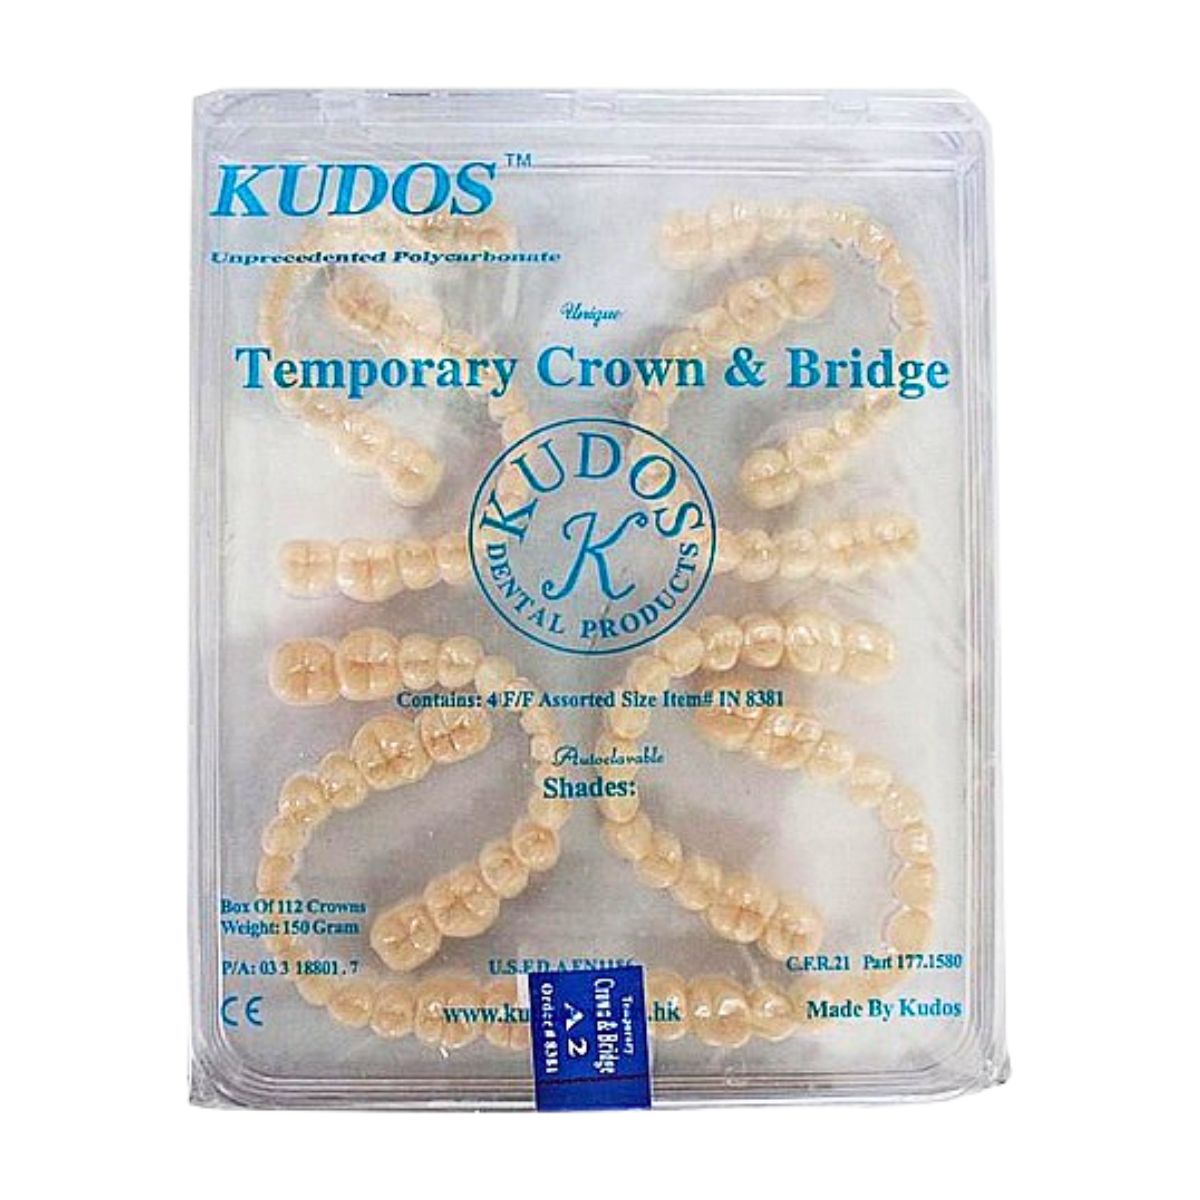 Kudos Temporary Crowns and Bridges Shade A2